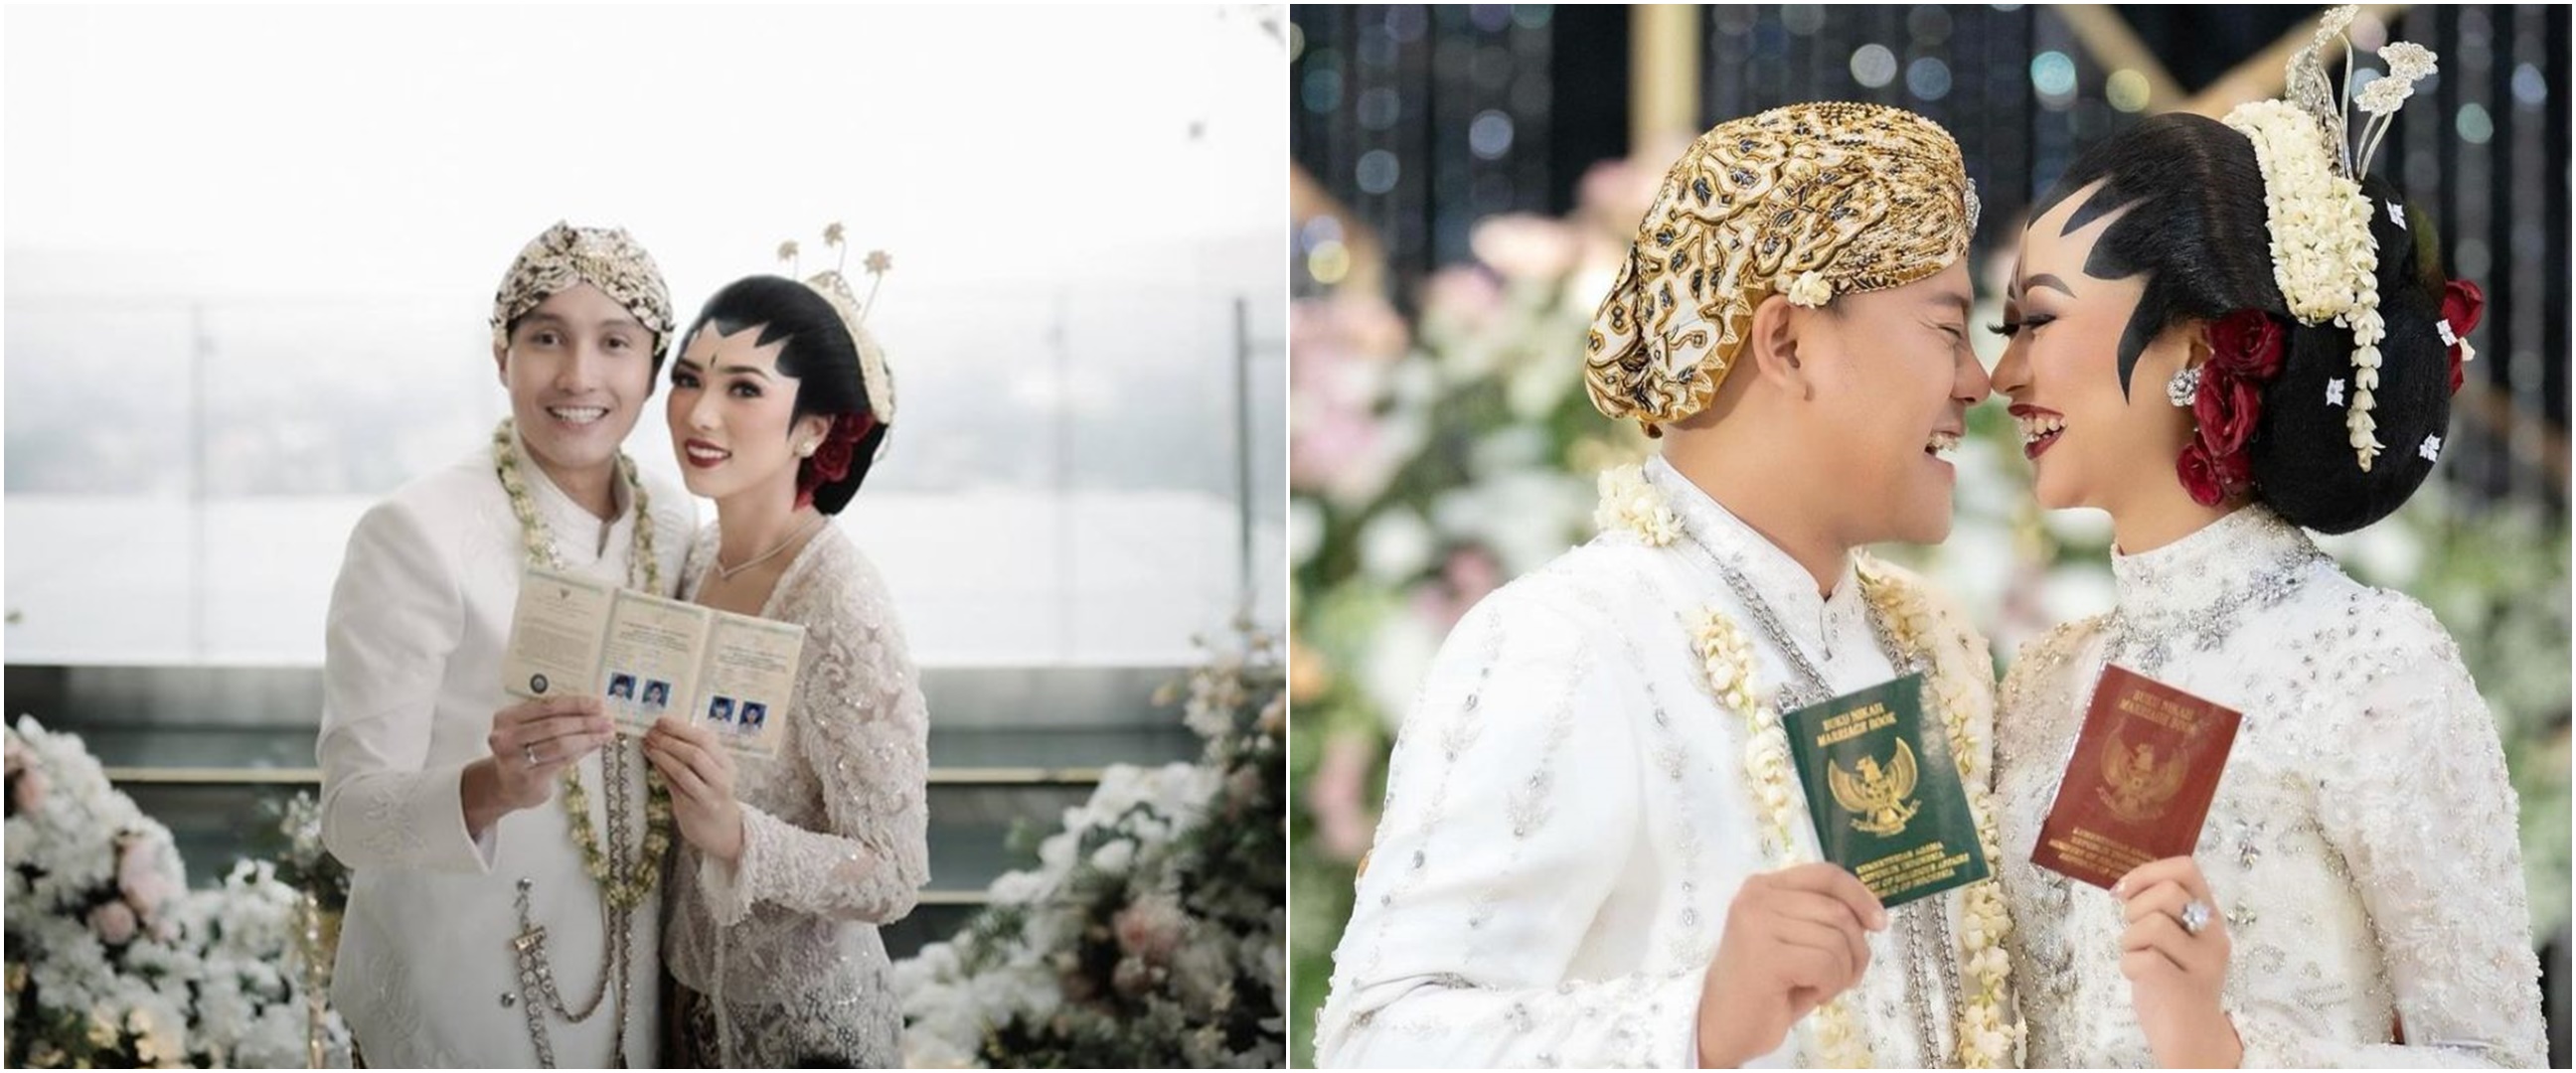 Momen pernikahan 7 musisi persunting dokter, Andika 'Kangen Band' gelar pesta sederhana di Lampung